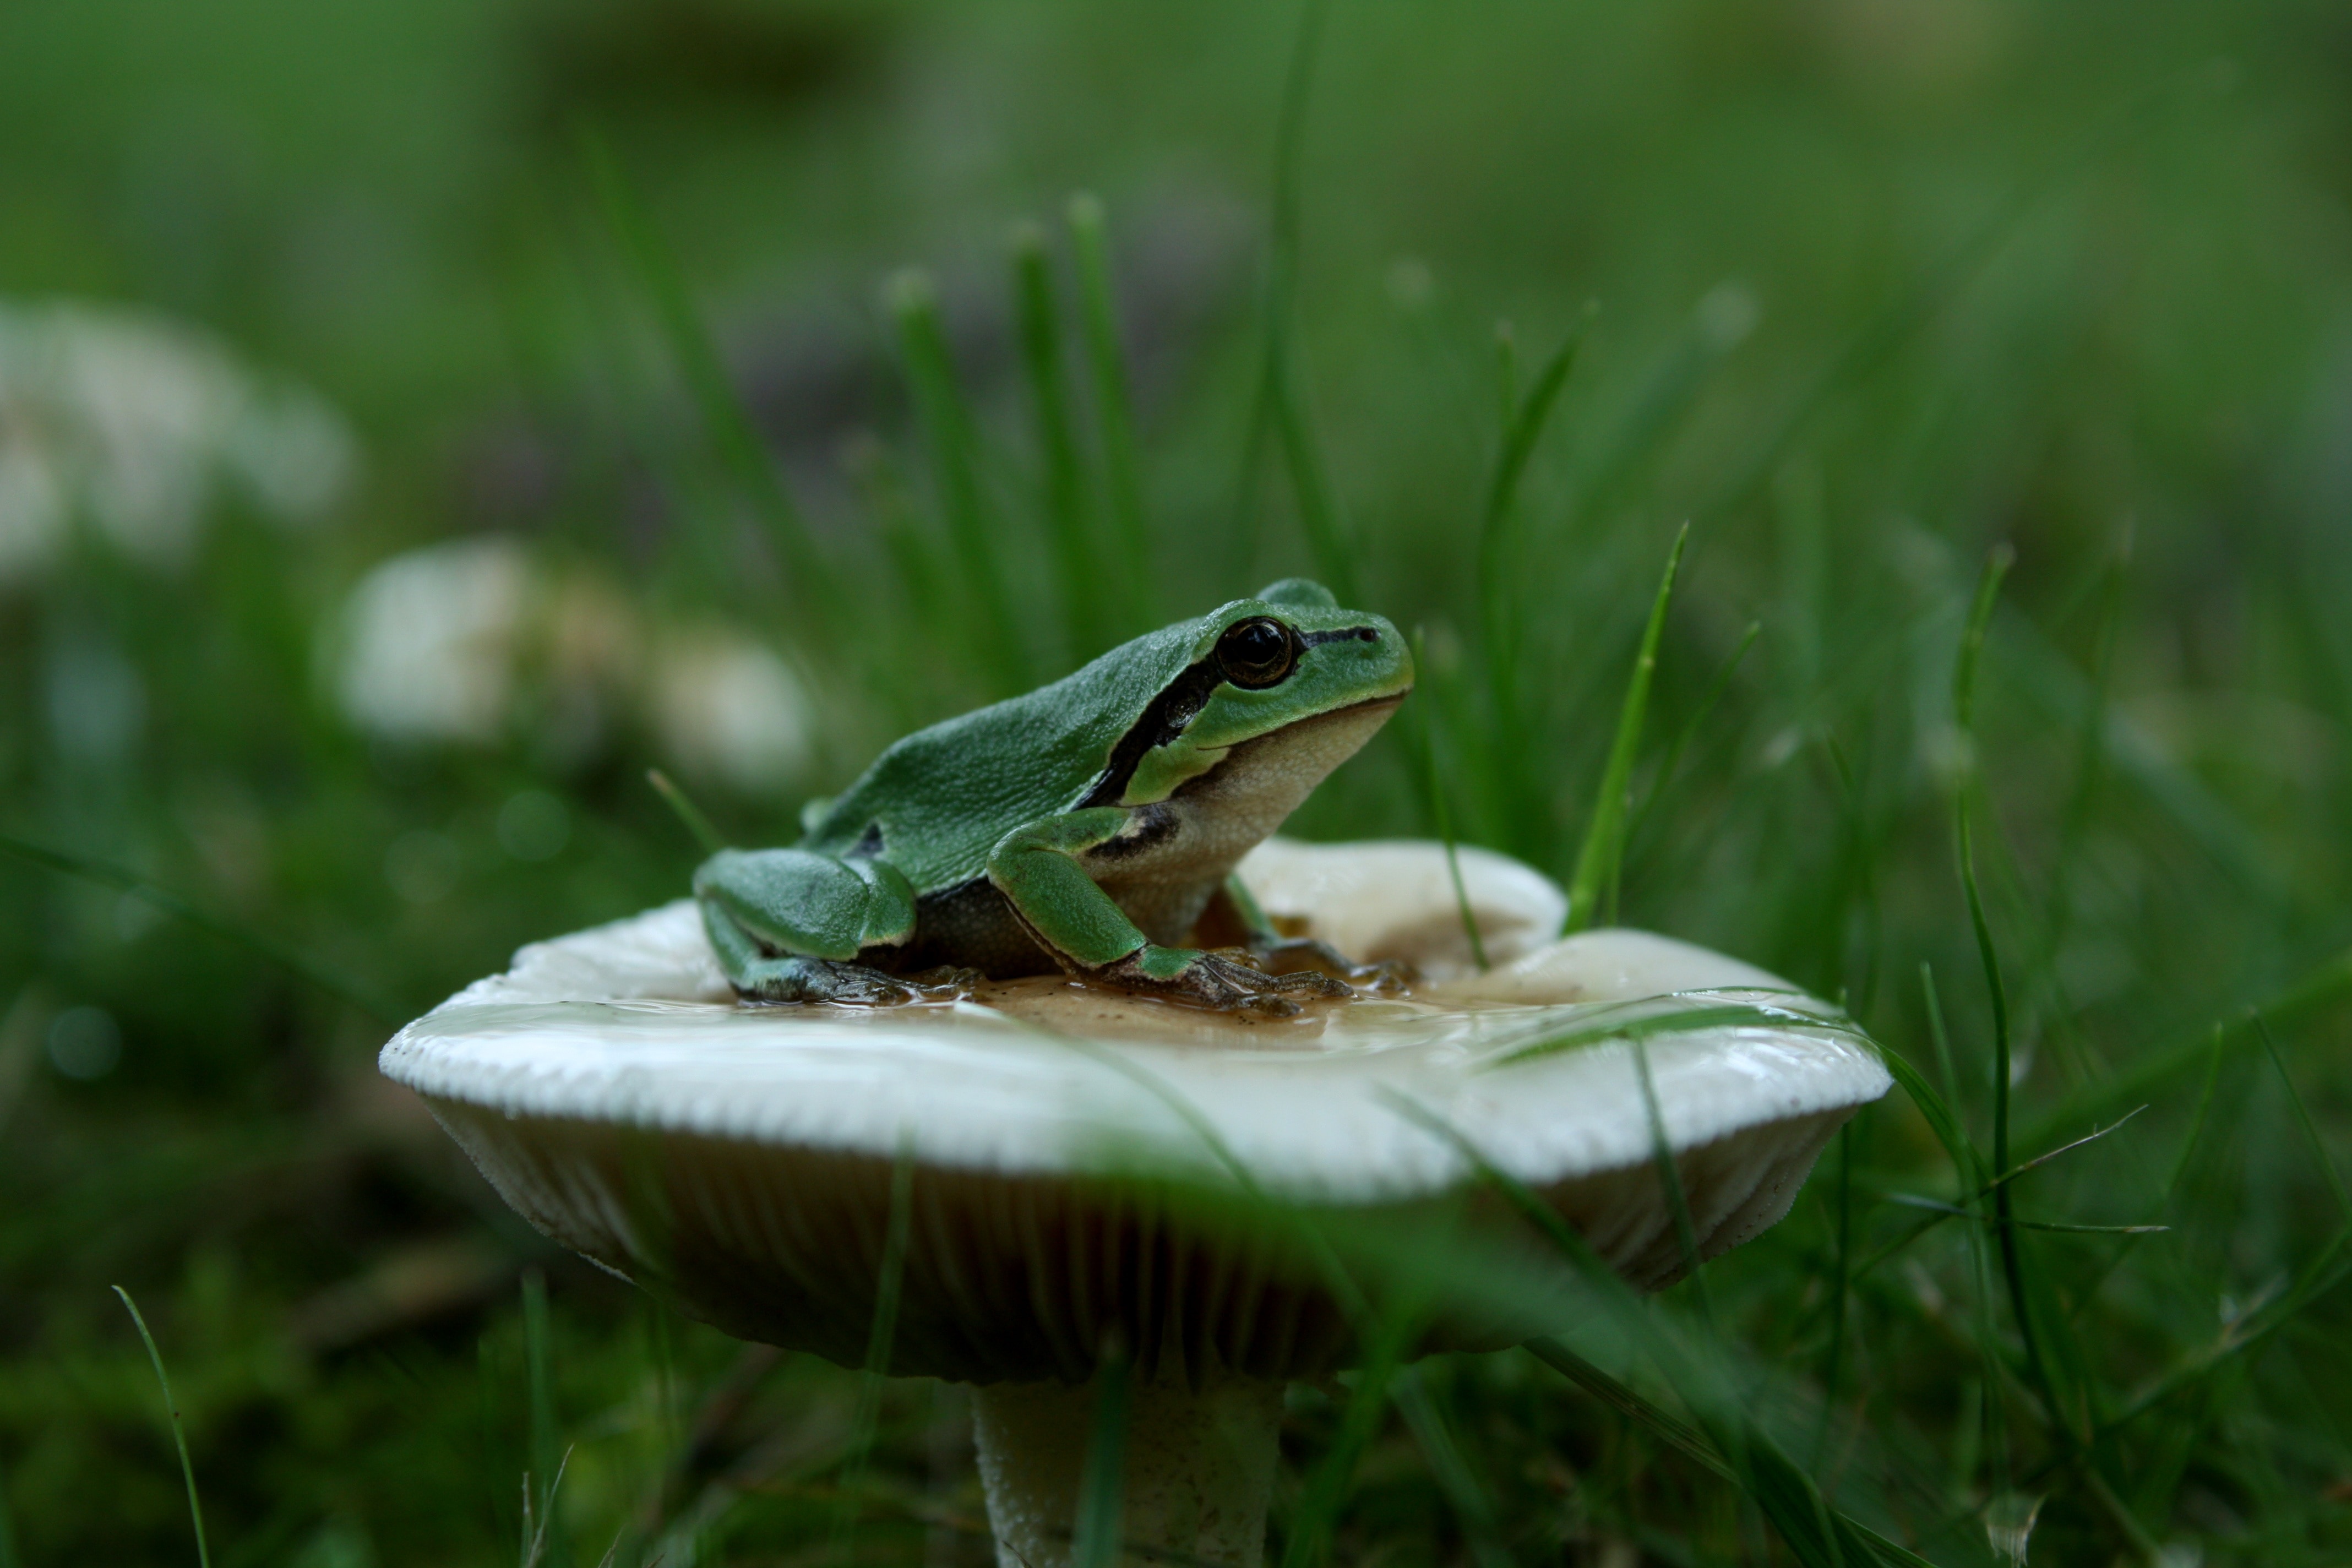 green frog on white mushroom